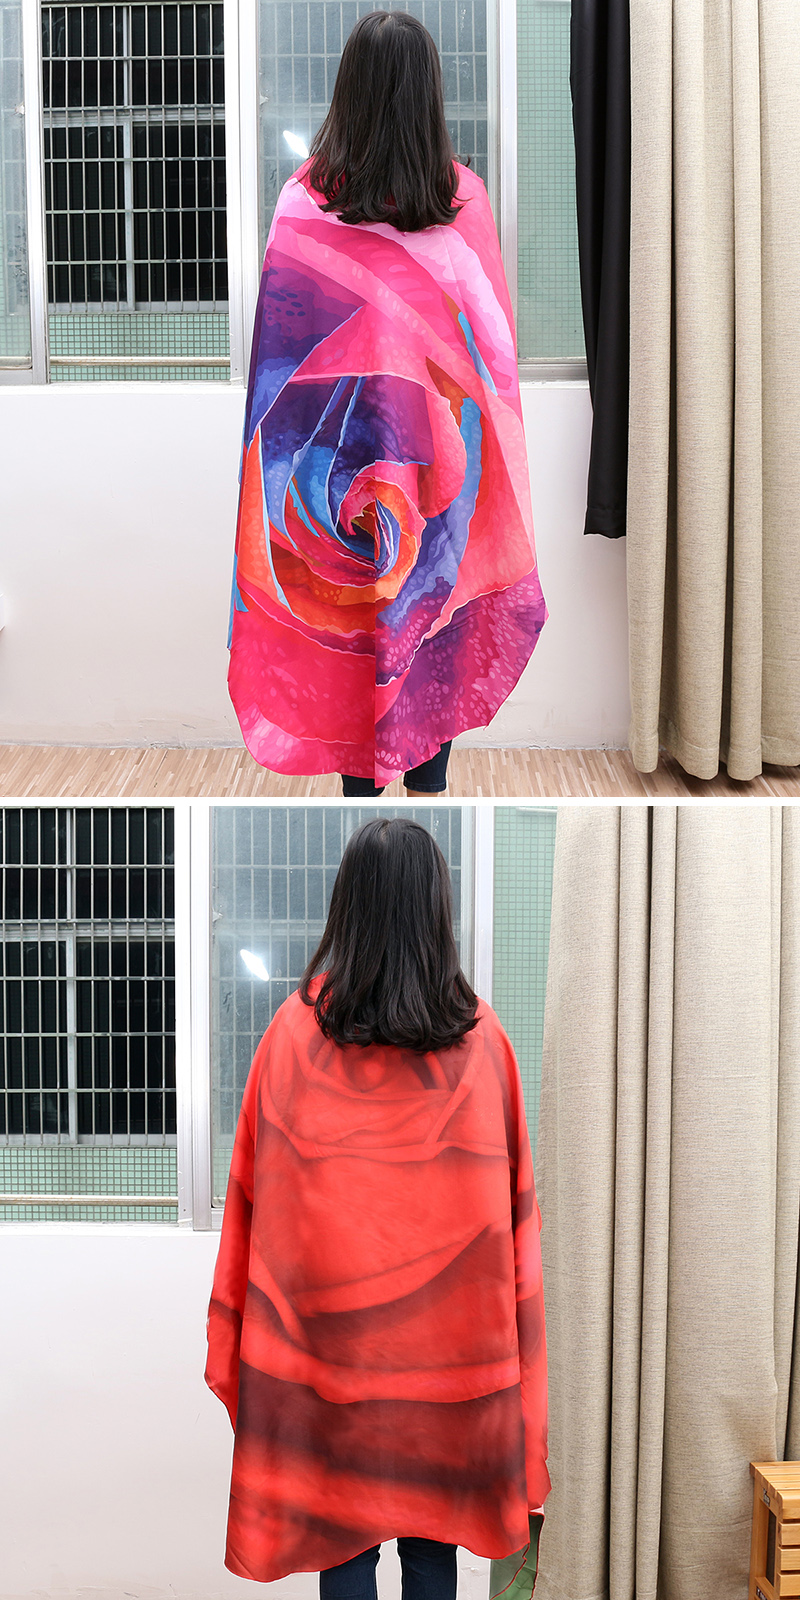 Honana-WX-89-147cm-3D-Simulation-Rose-Beach-Towel-Mat-Romantic-Women-Shawl-Bed-Sheet-Tapestry-1139313-2